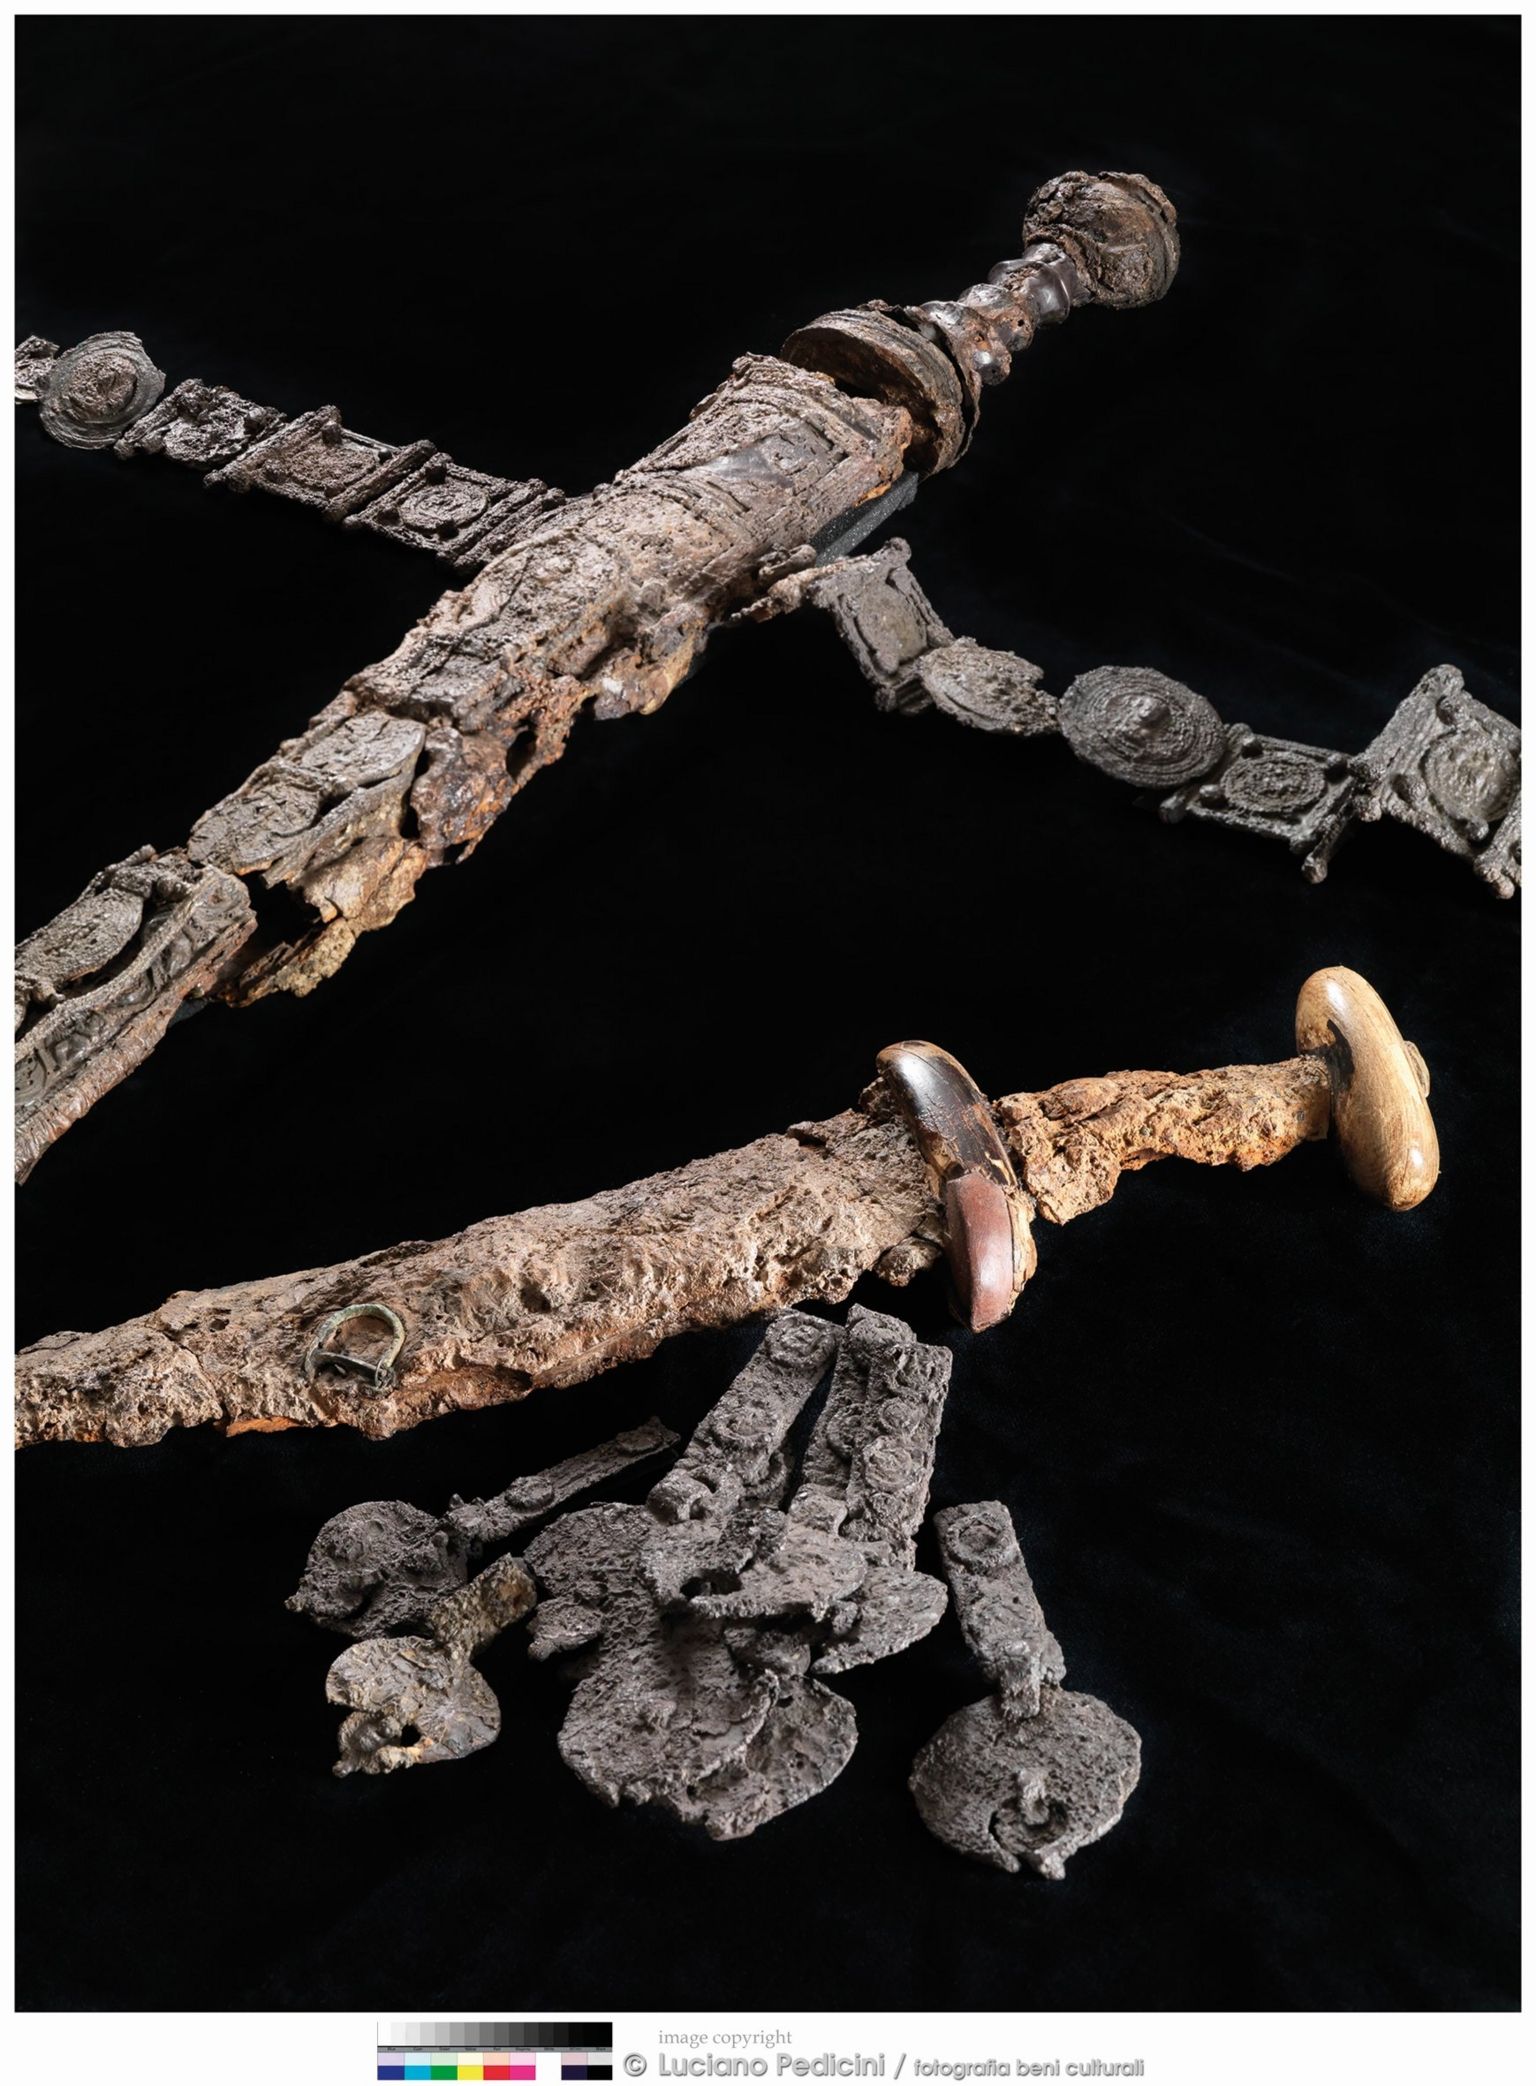 Sword, belt and dagger belonging to the skeleton